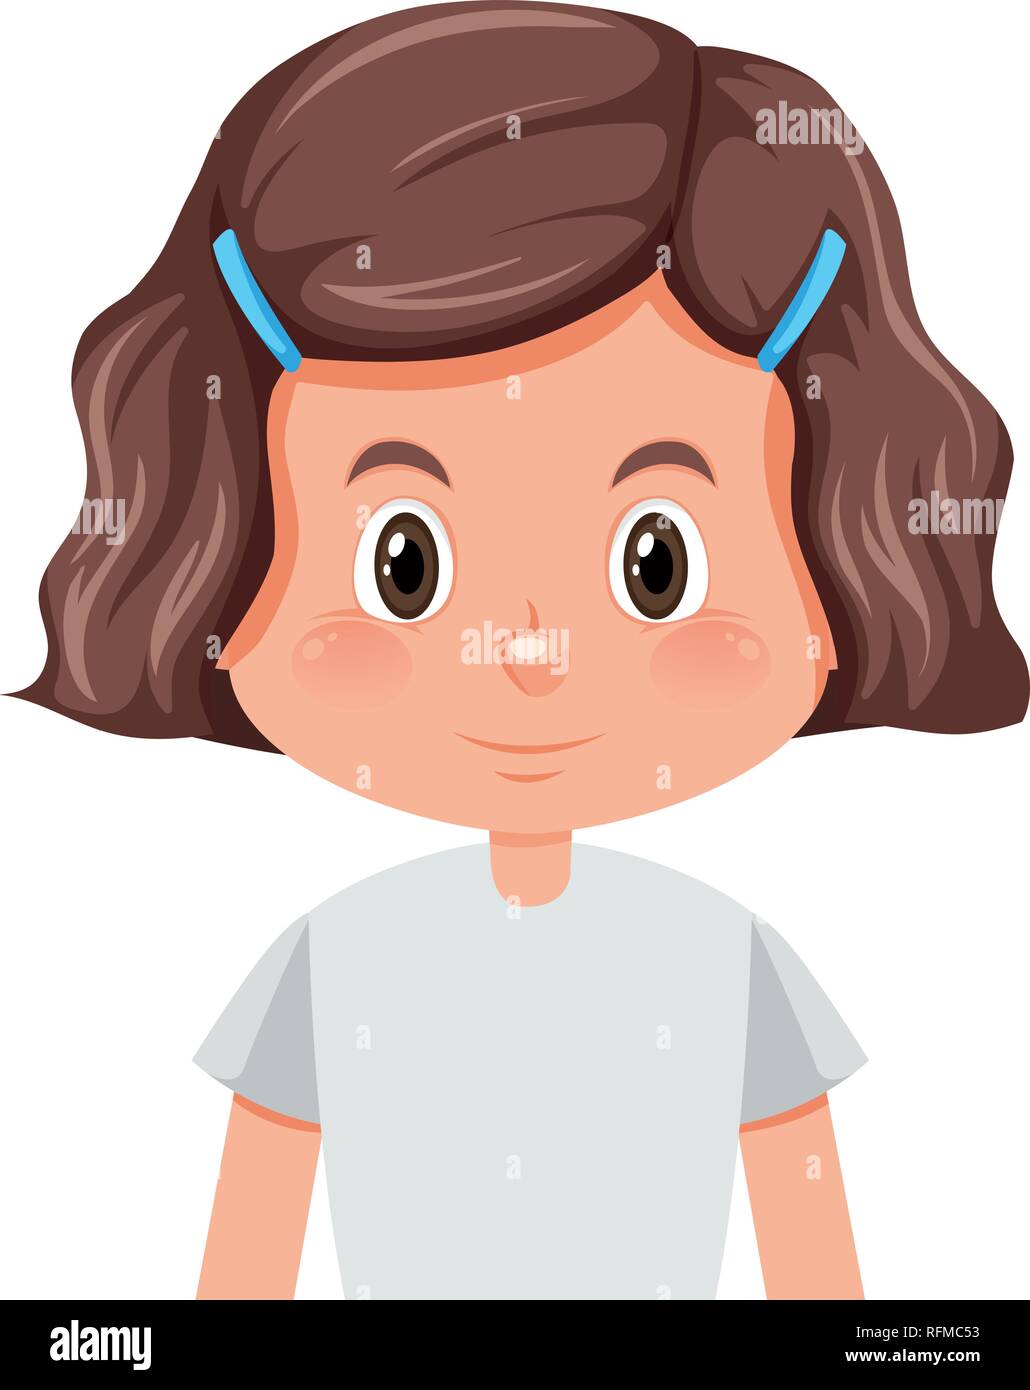 A brunette girl character illustration Stock Vector Image & Art - Alamy